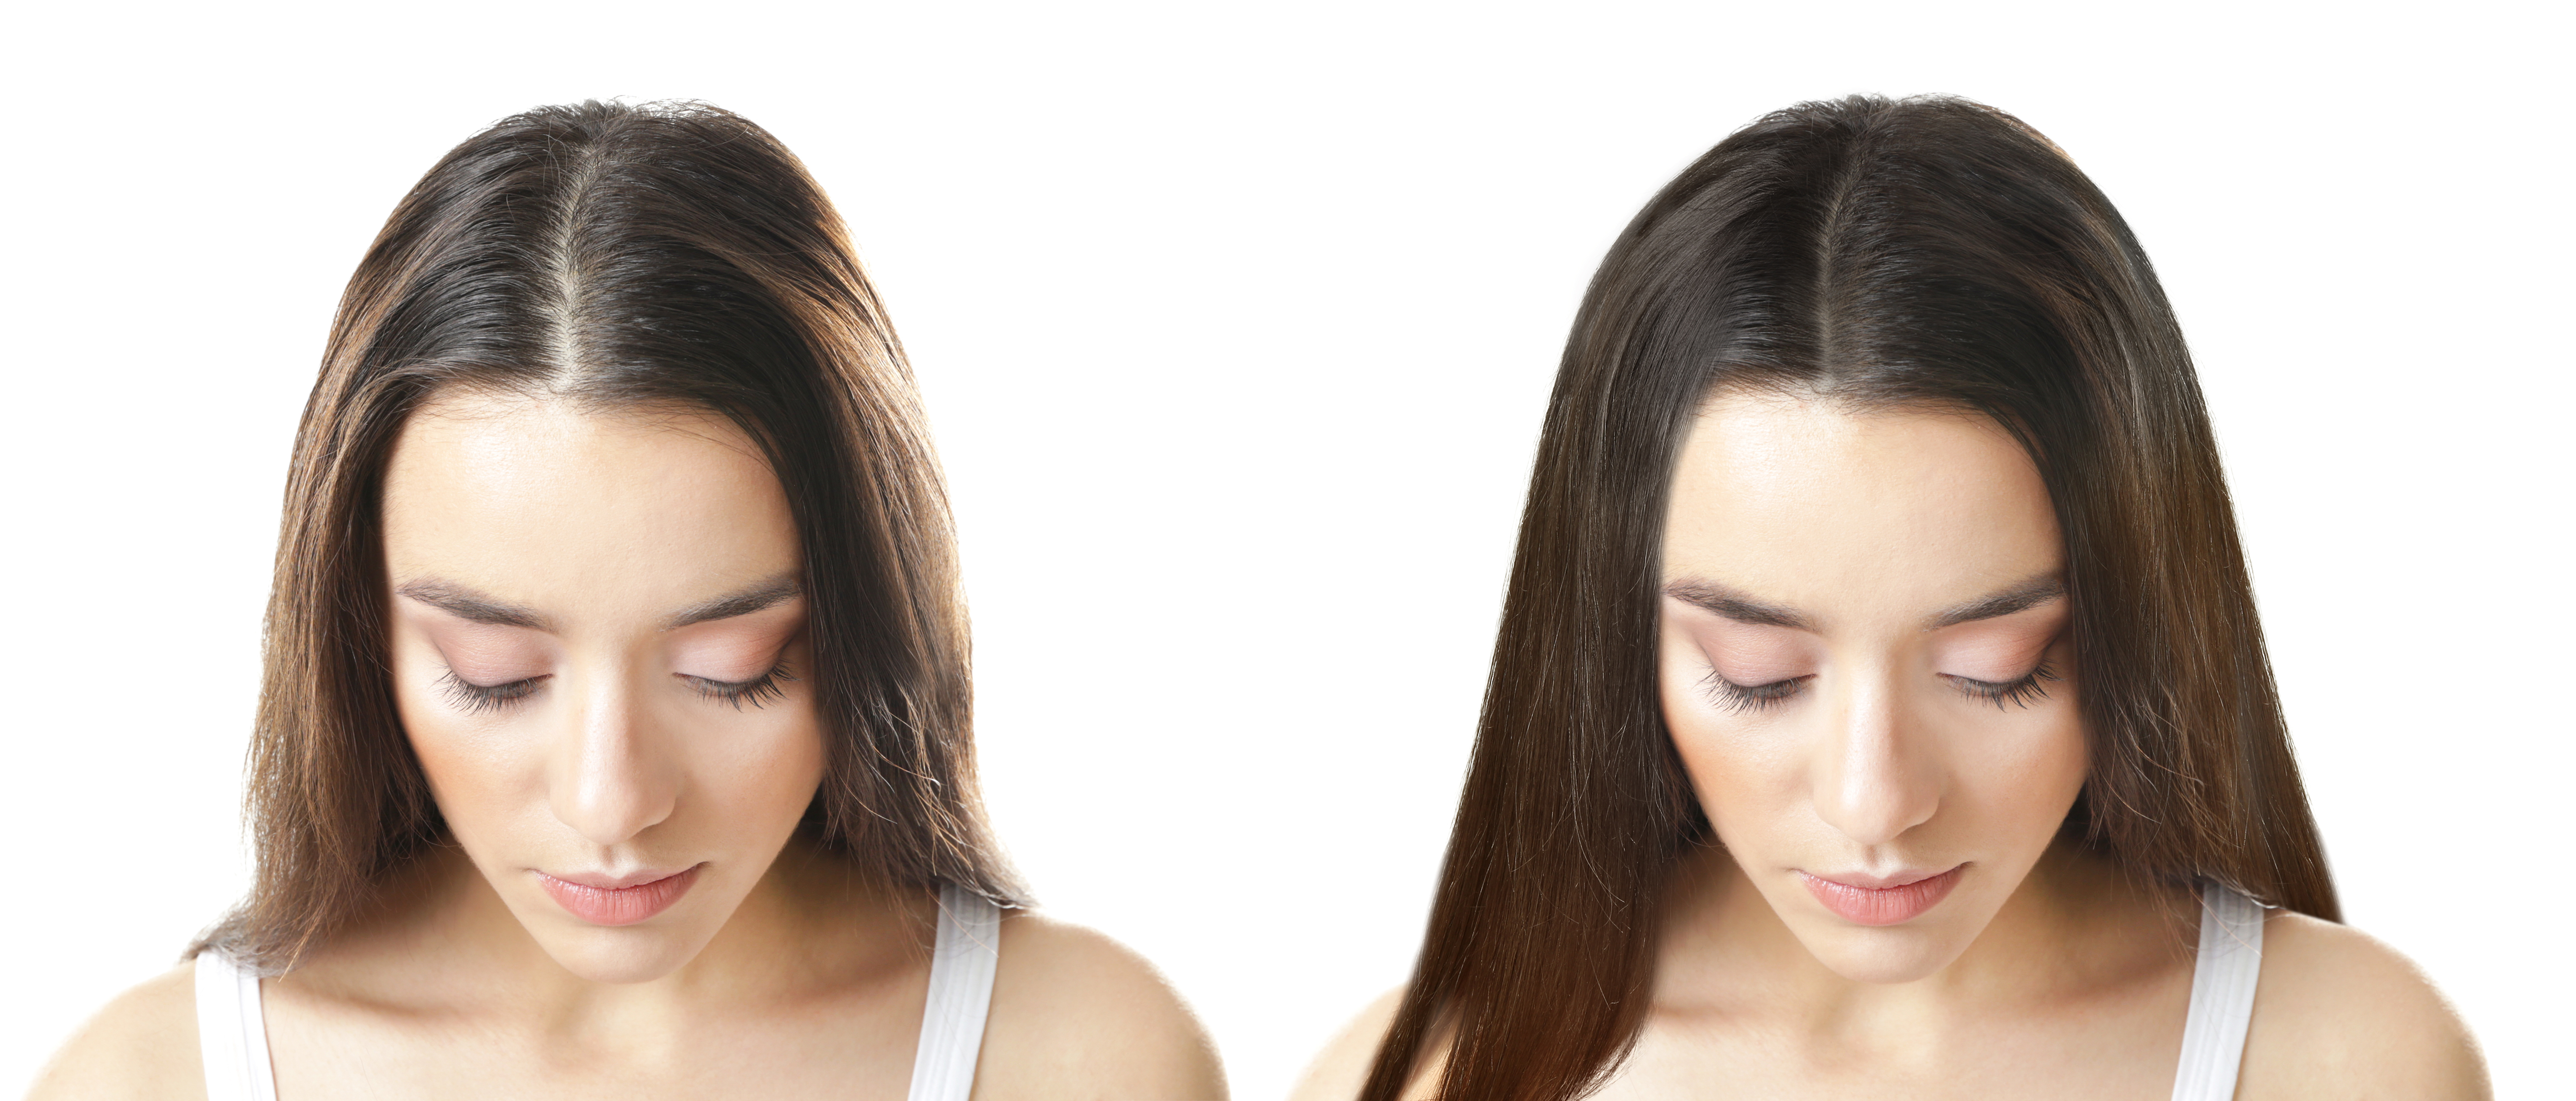 Как остановить выпадение волос и ускорить его рост? - Irene Bukur